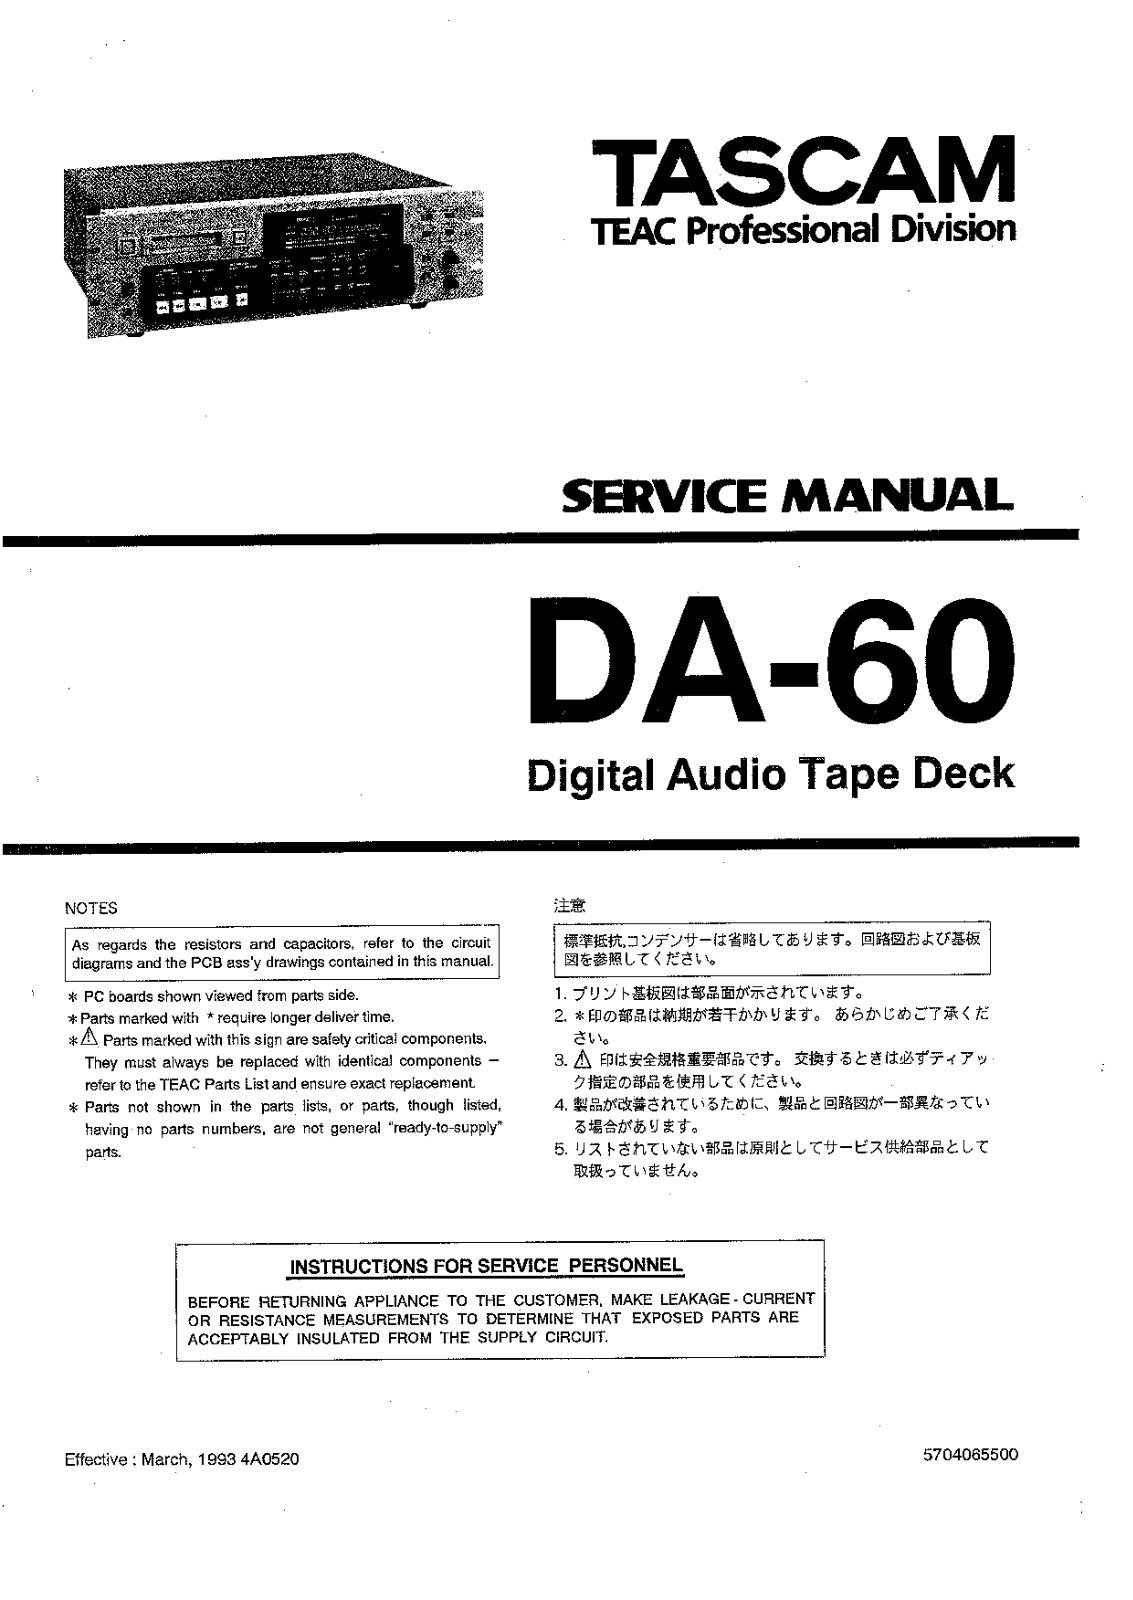 Tascam DA-60 Service manual